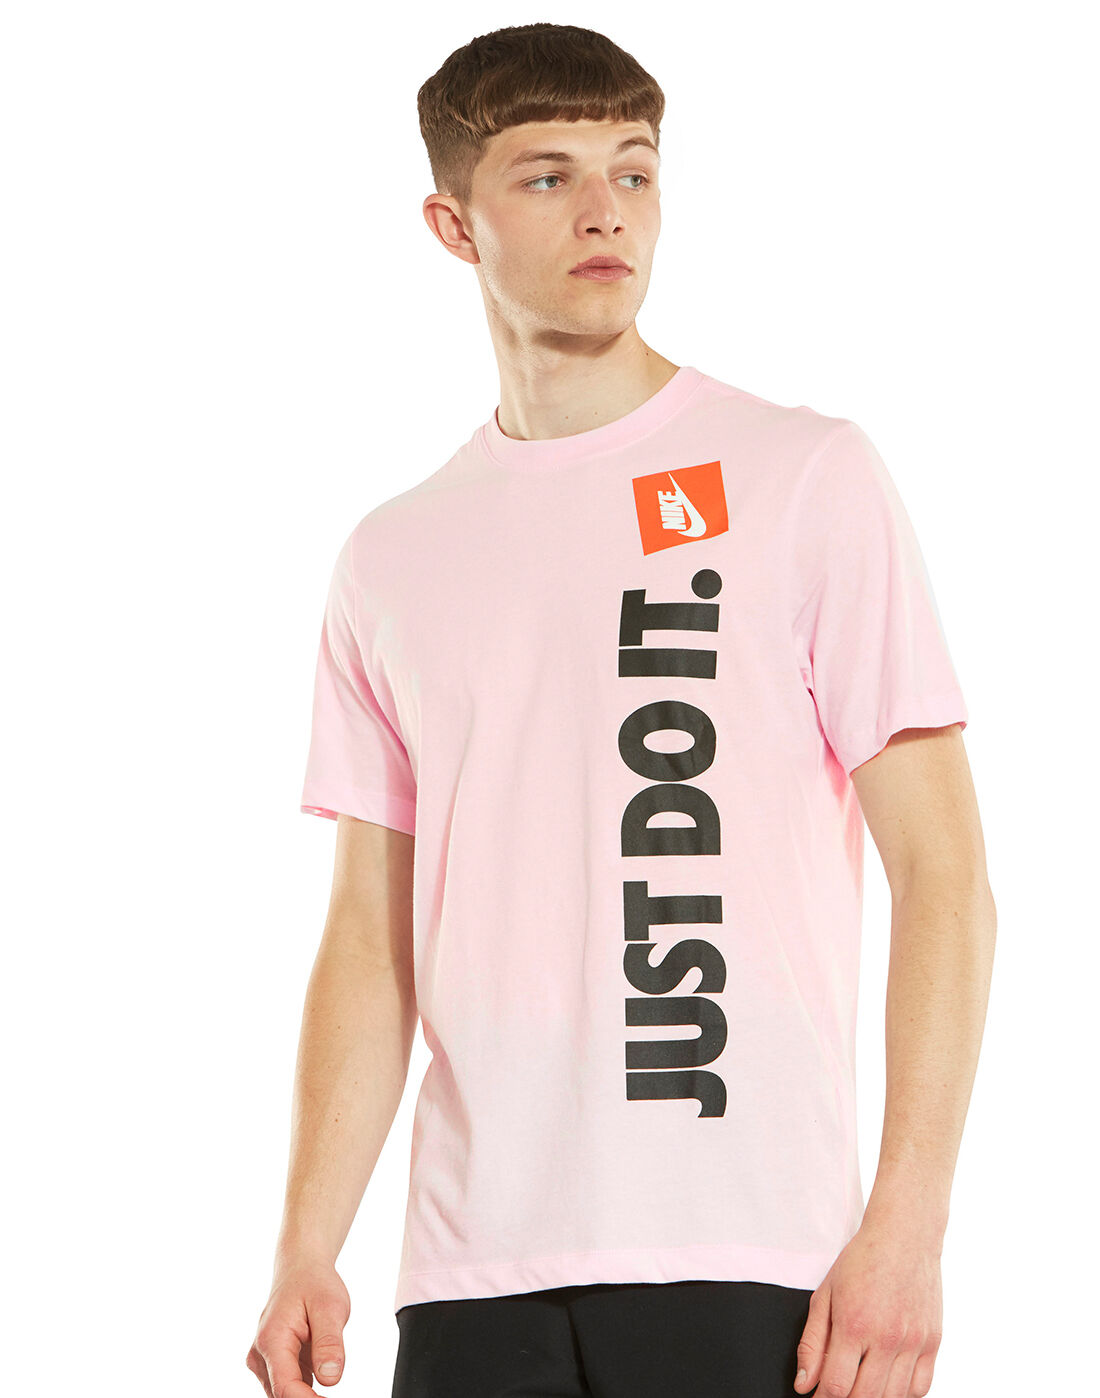 orange and pink nike shirt